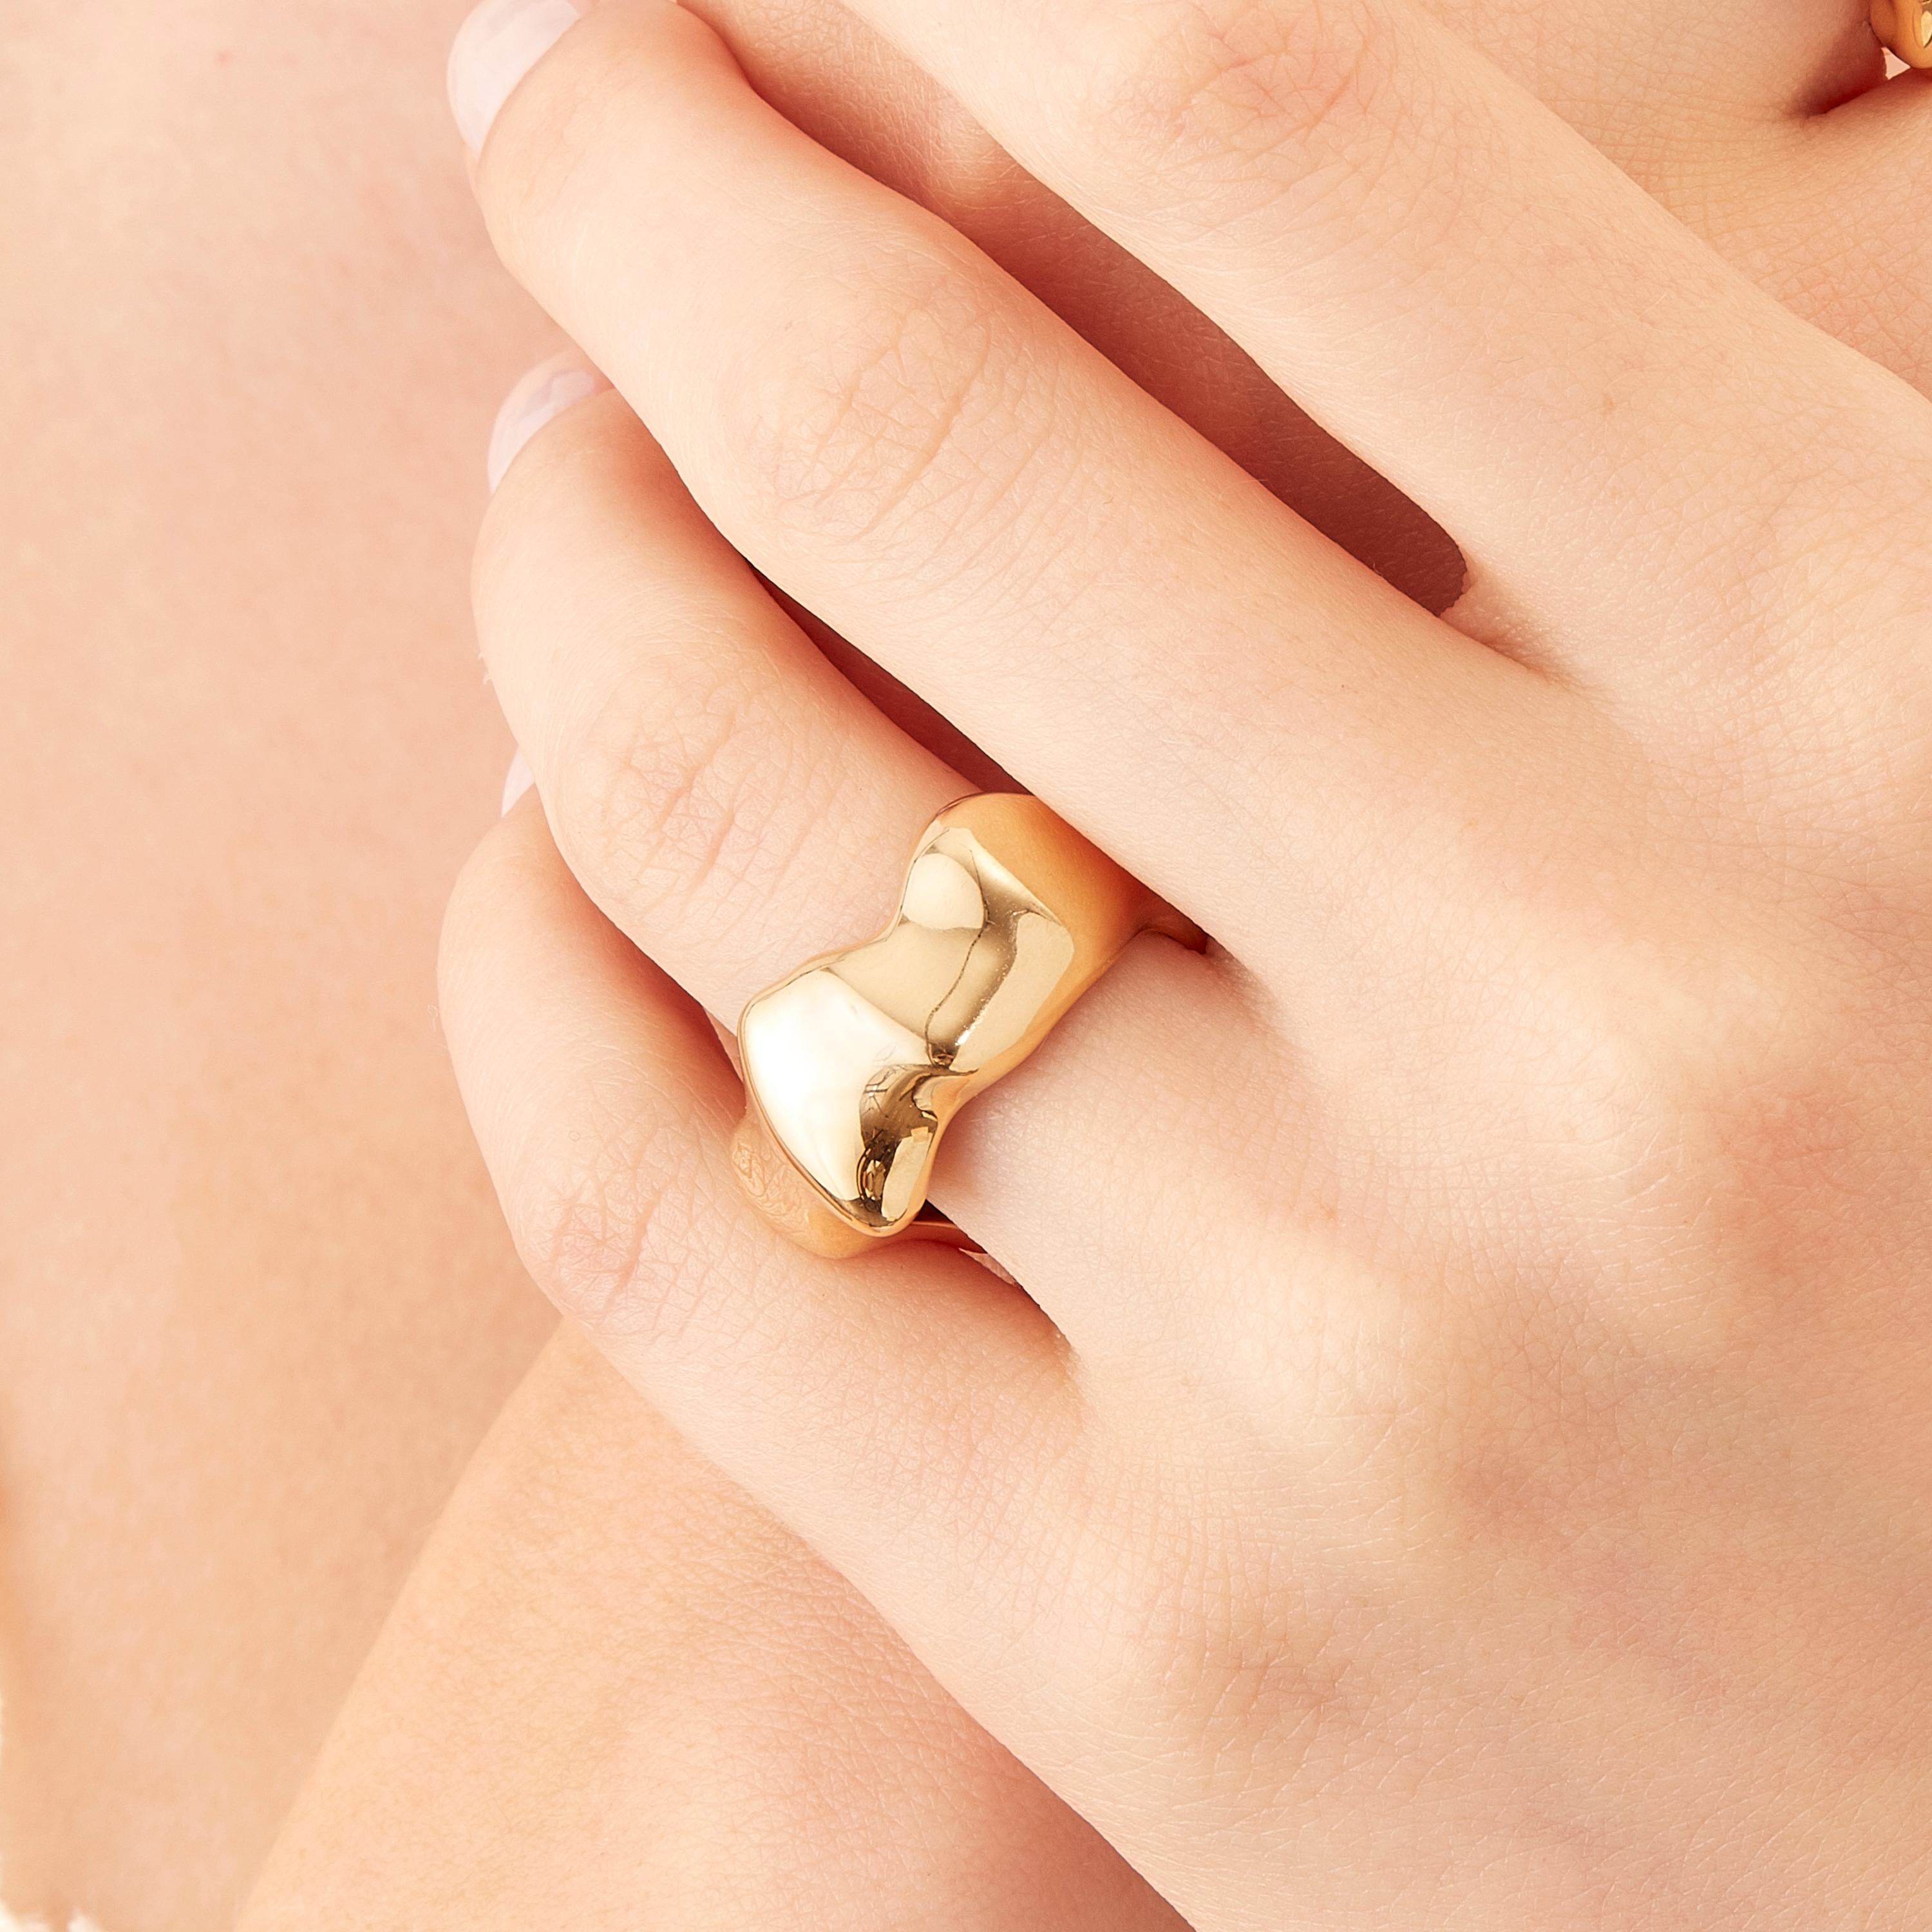 Der in limitierter Auflage im Mailänder Atelier von Nathalie Jean handgefertigte Mercure Fashion Ring besteht aus 18 Karat Roségold, einer warmen, edlen Farbe, die dem Gelbgold nahe kommt. Kleine, zierliche, vibrierende Skulpturen mit scheinbar